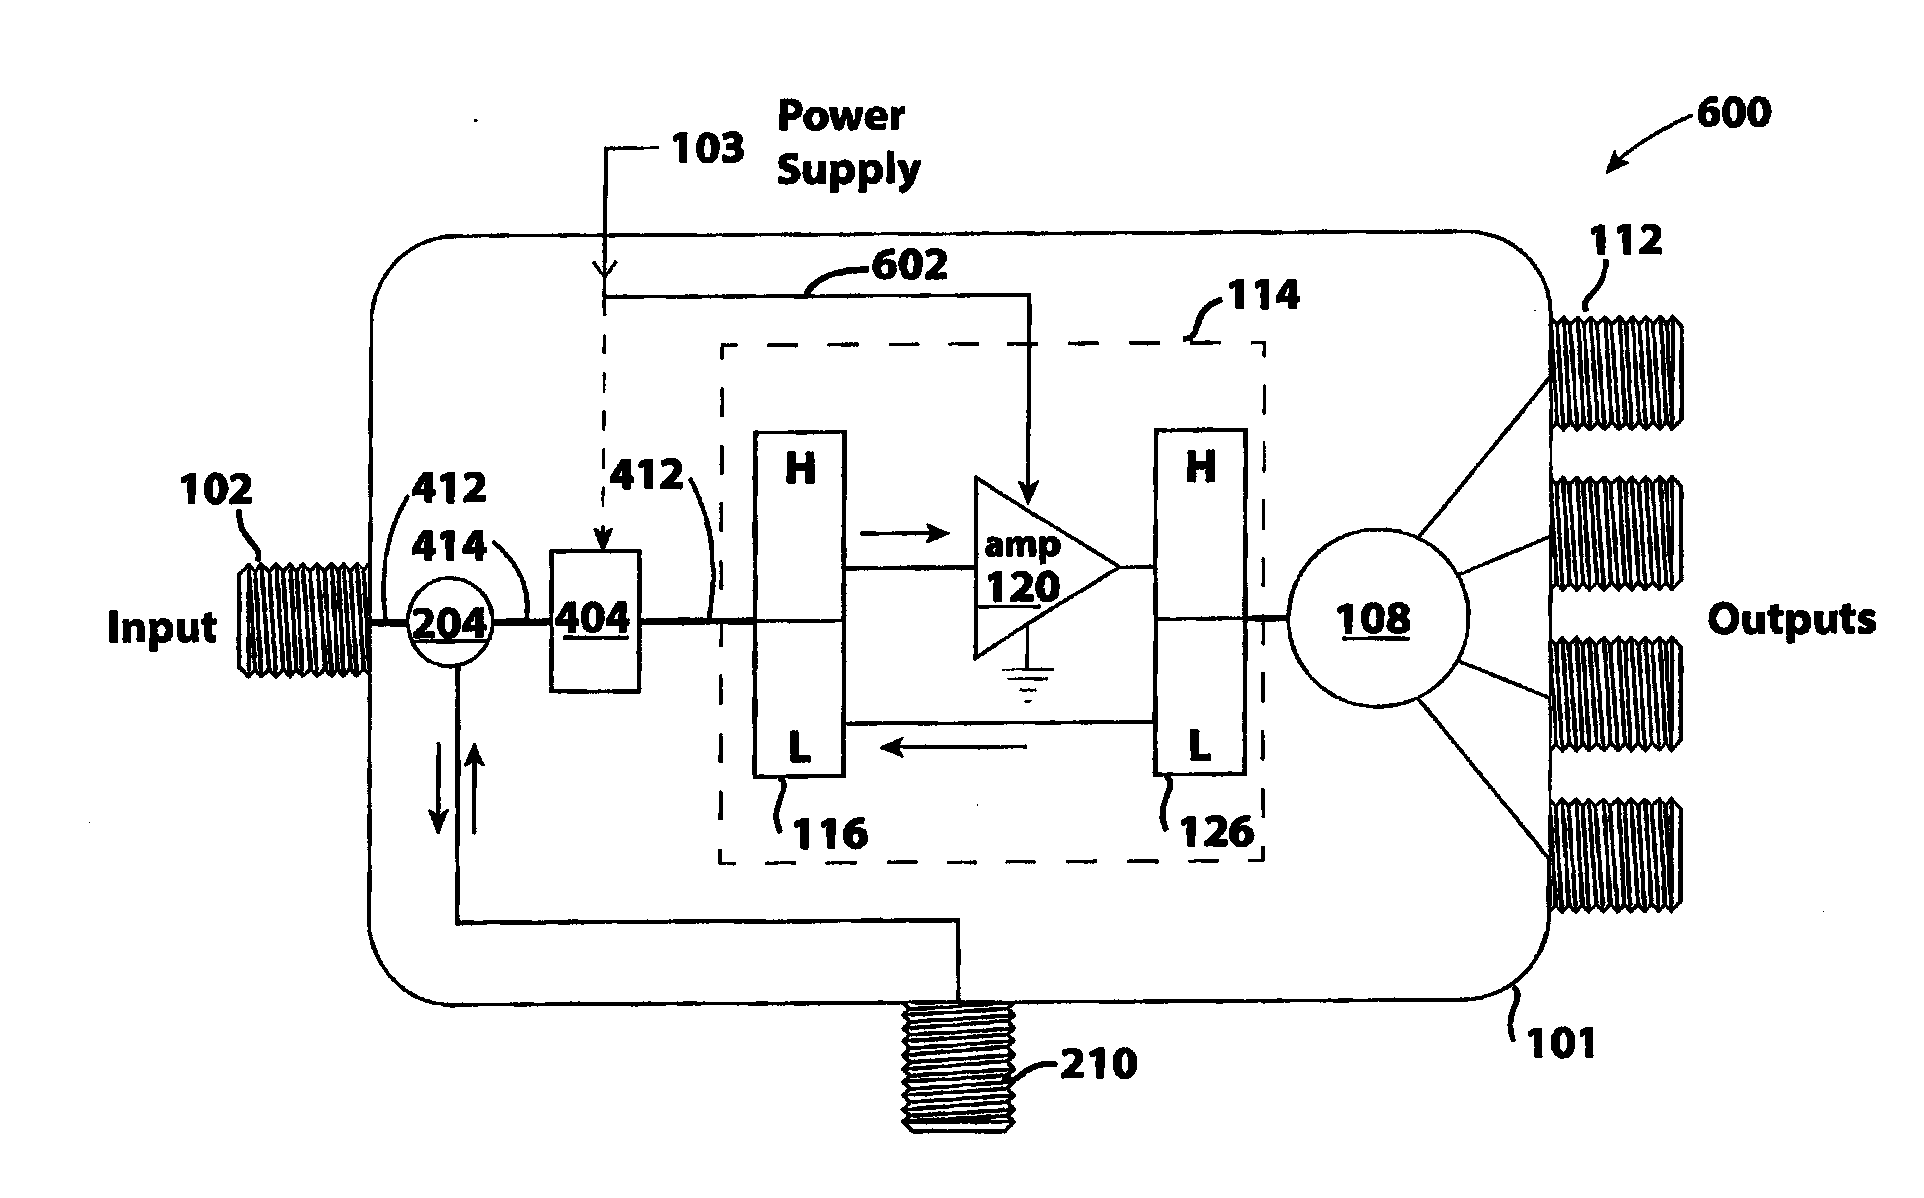 Impedance compensation circuit